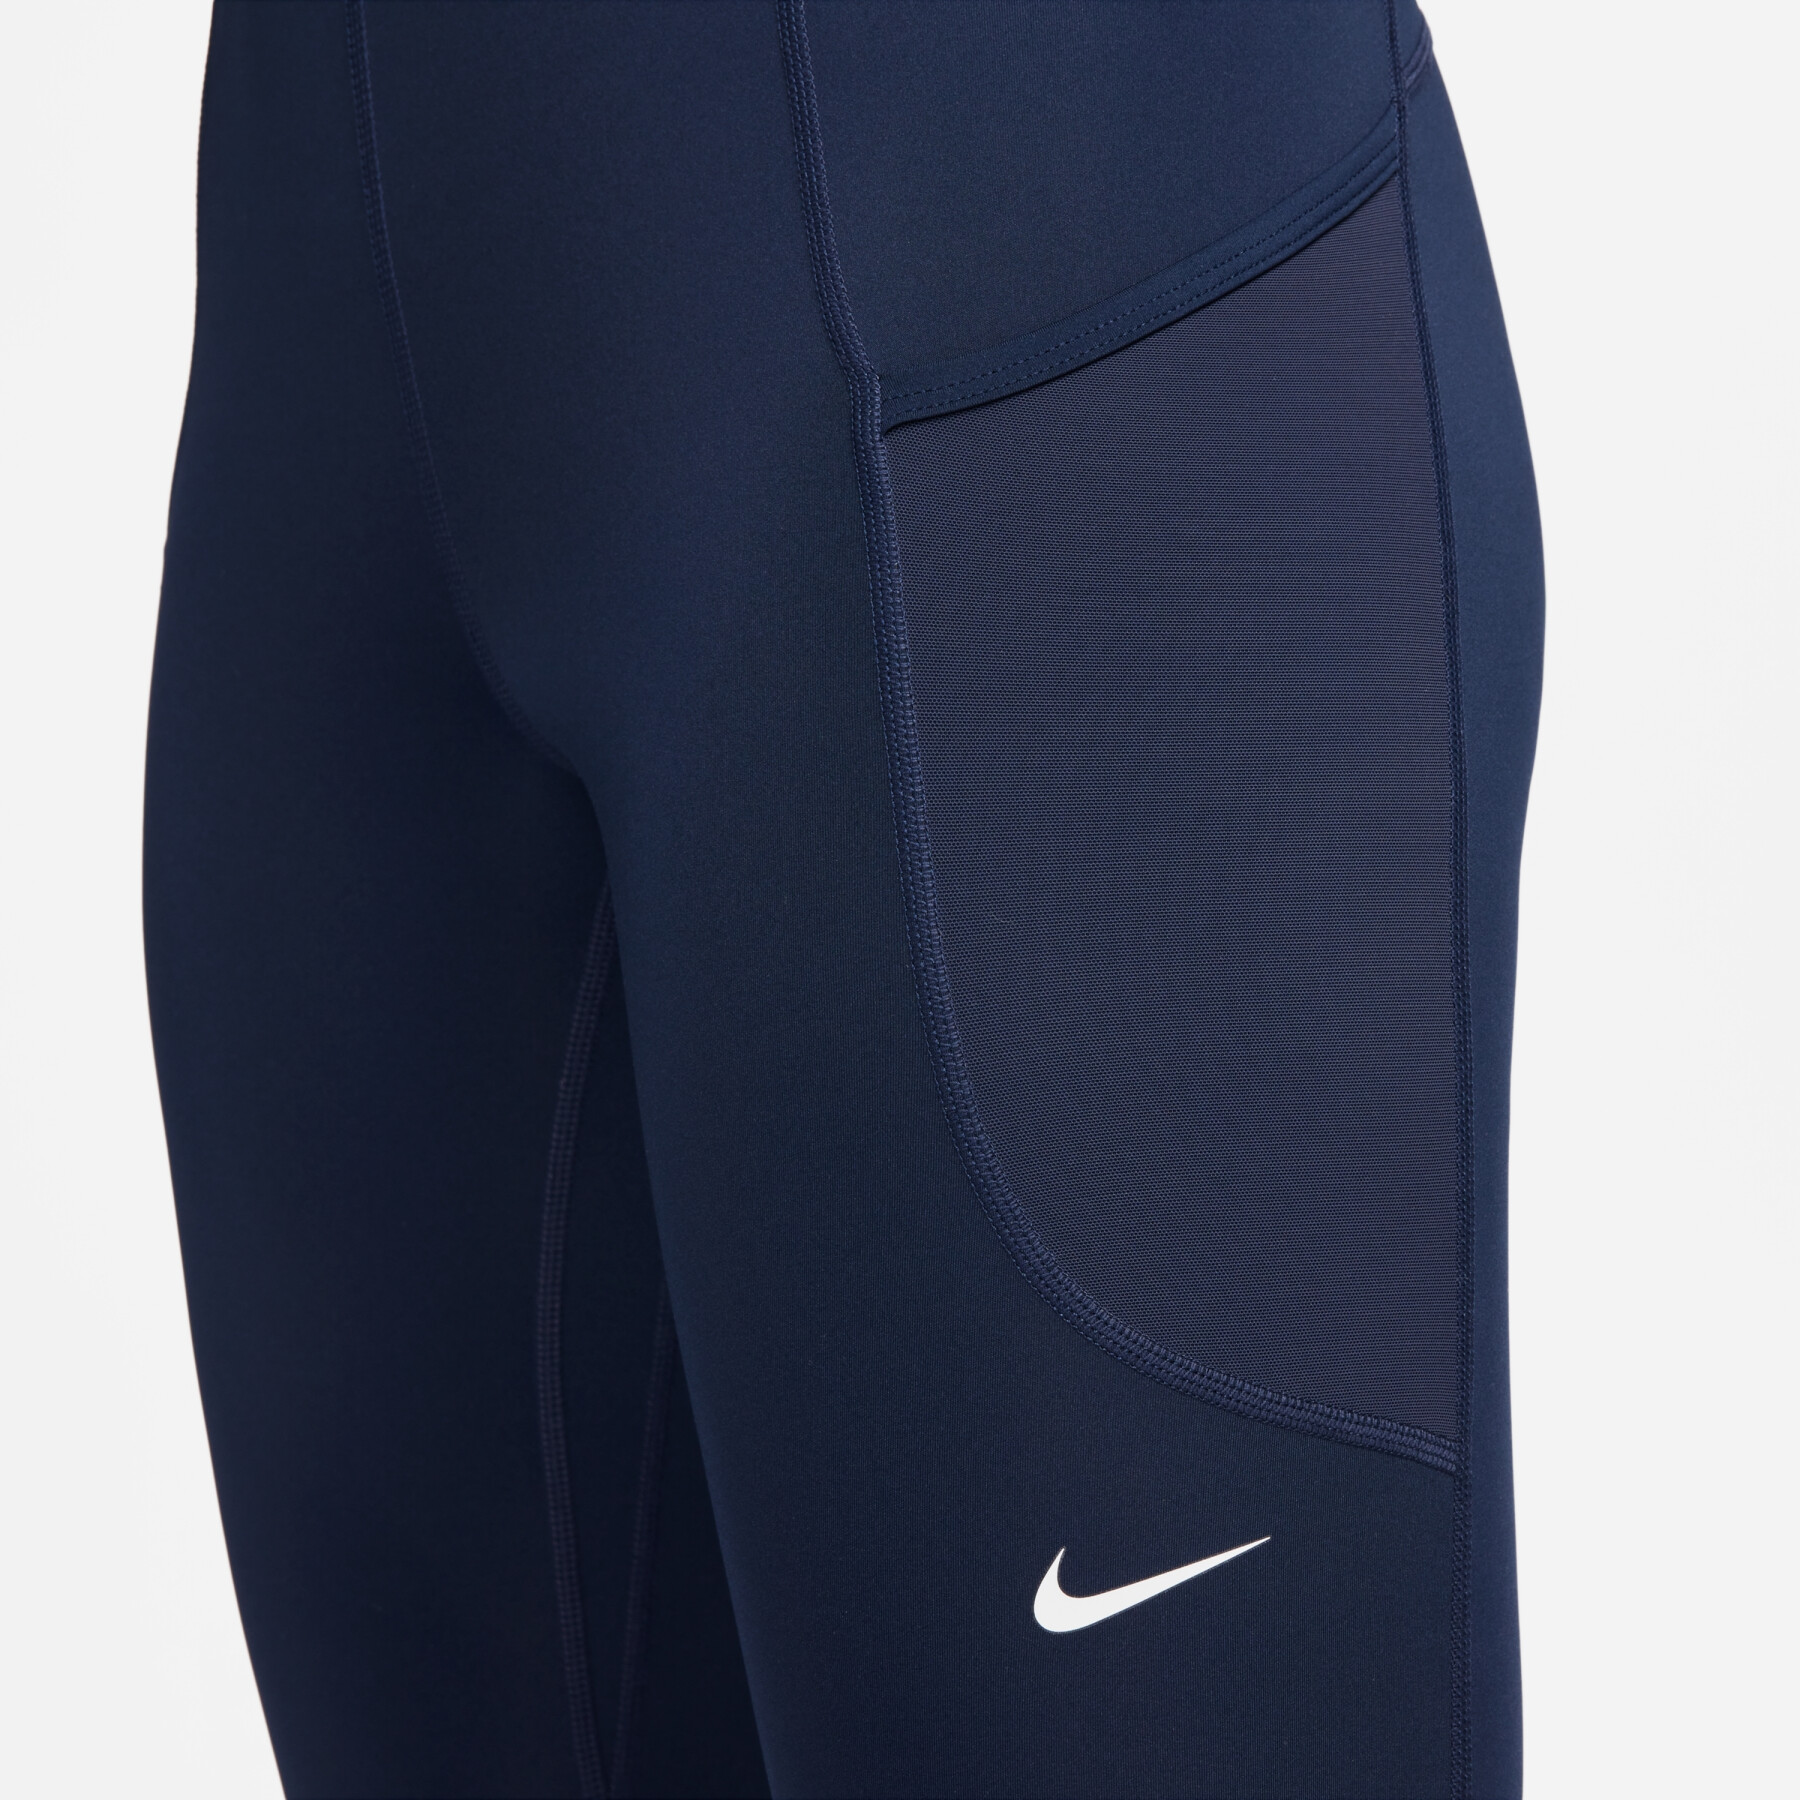 Women's leggings Nike Pro 365 - Leggings - Women's clothing - Fitness